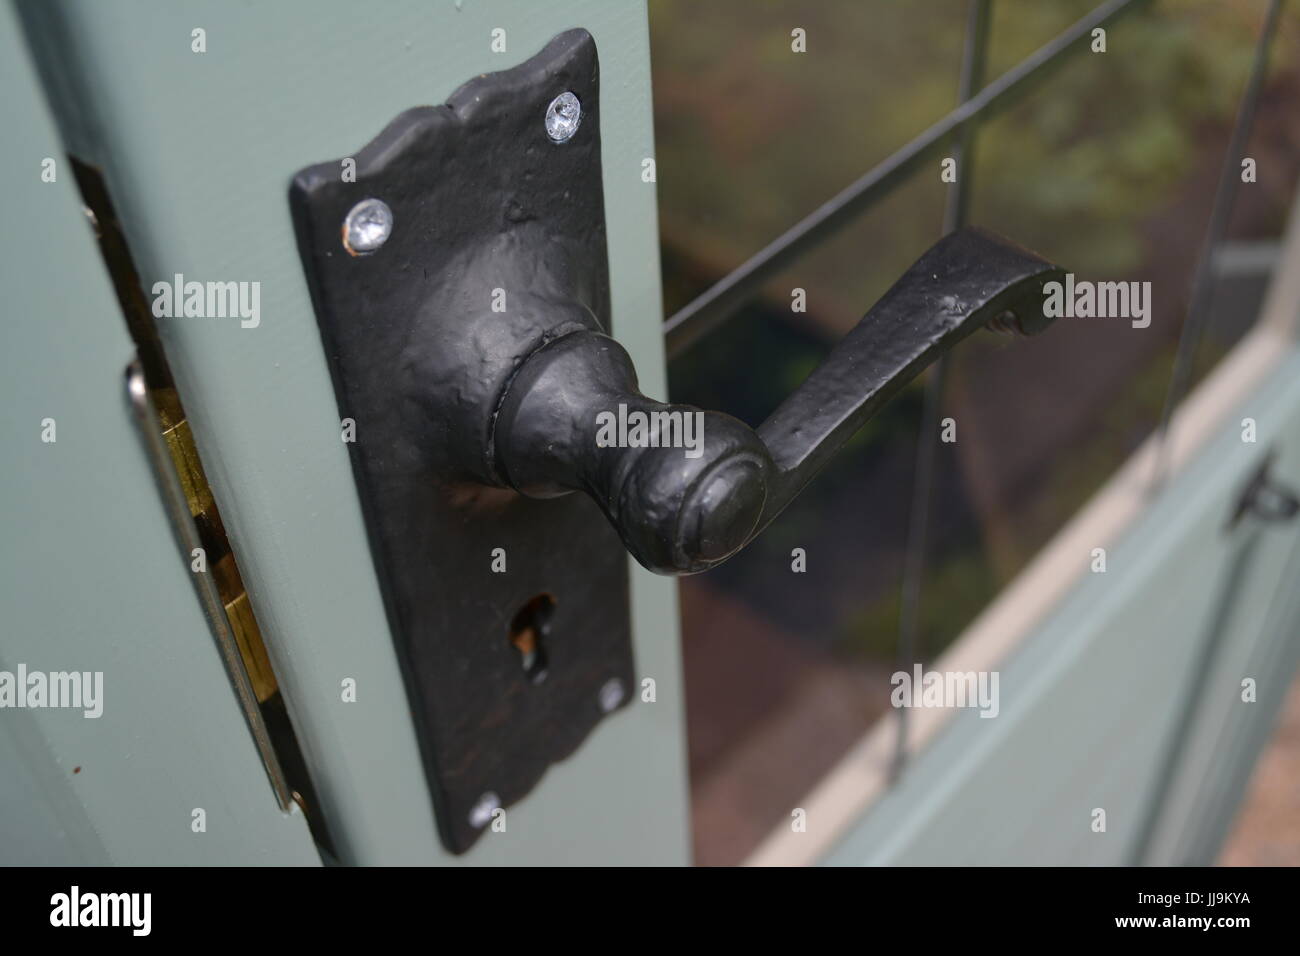 Black metal lockable door handle re security fixing architecture Stock Photo